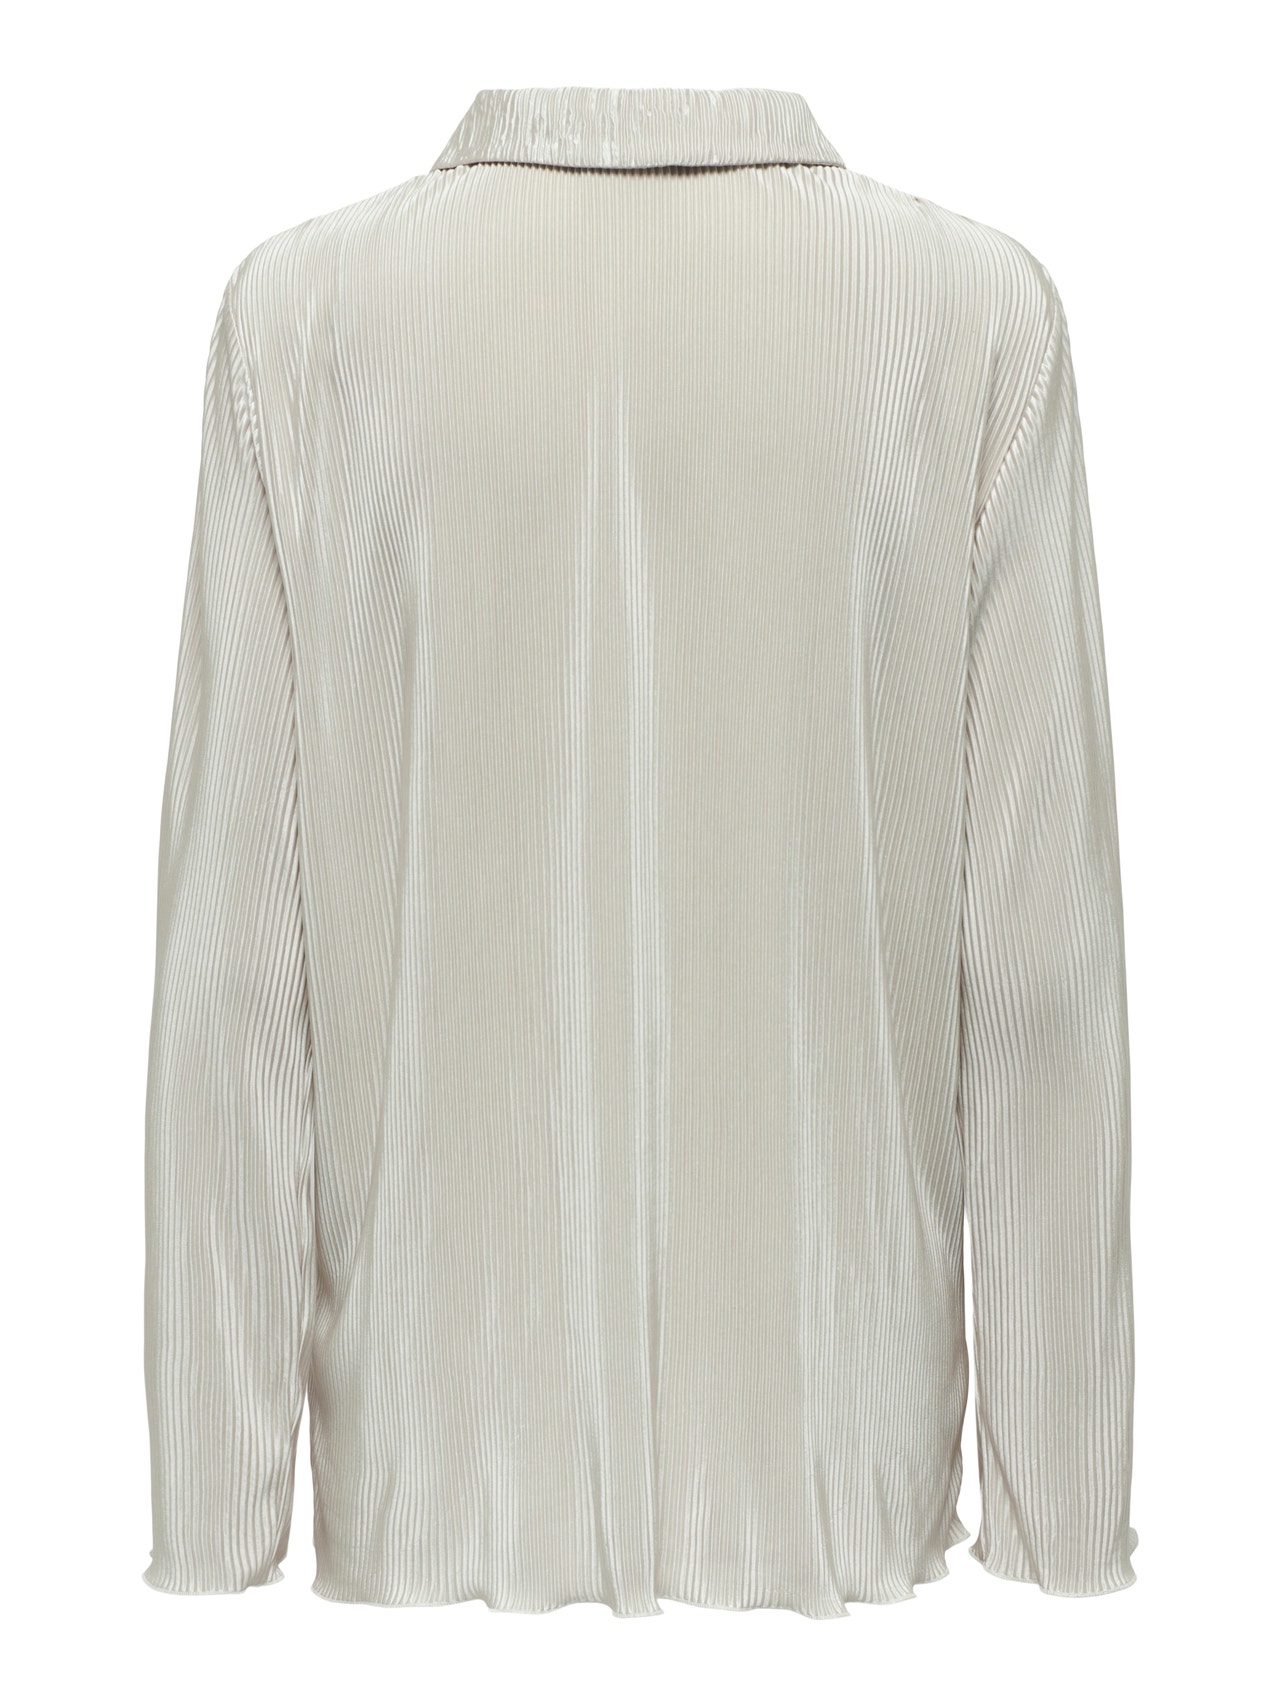 ONLY Regular fit Overhemd kraag Top -Sandshell - 15295571